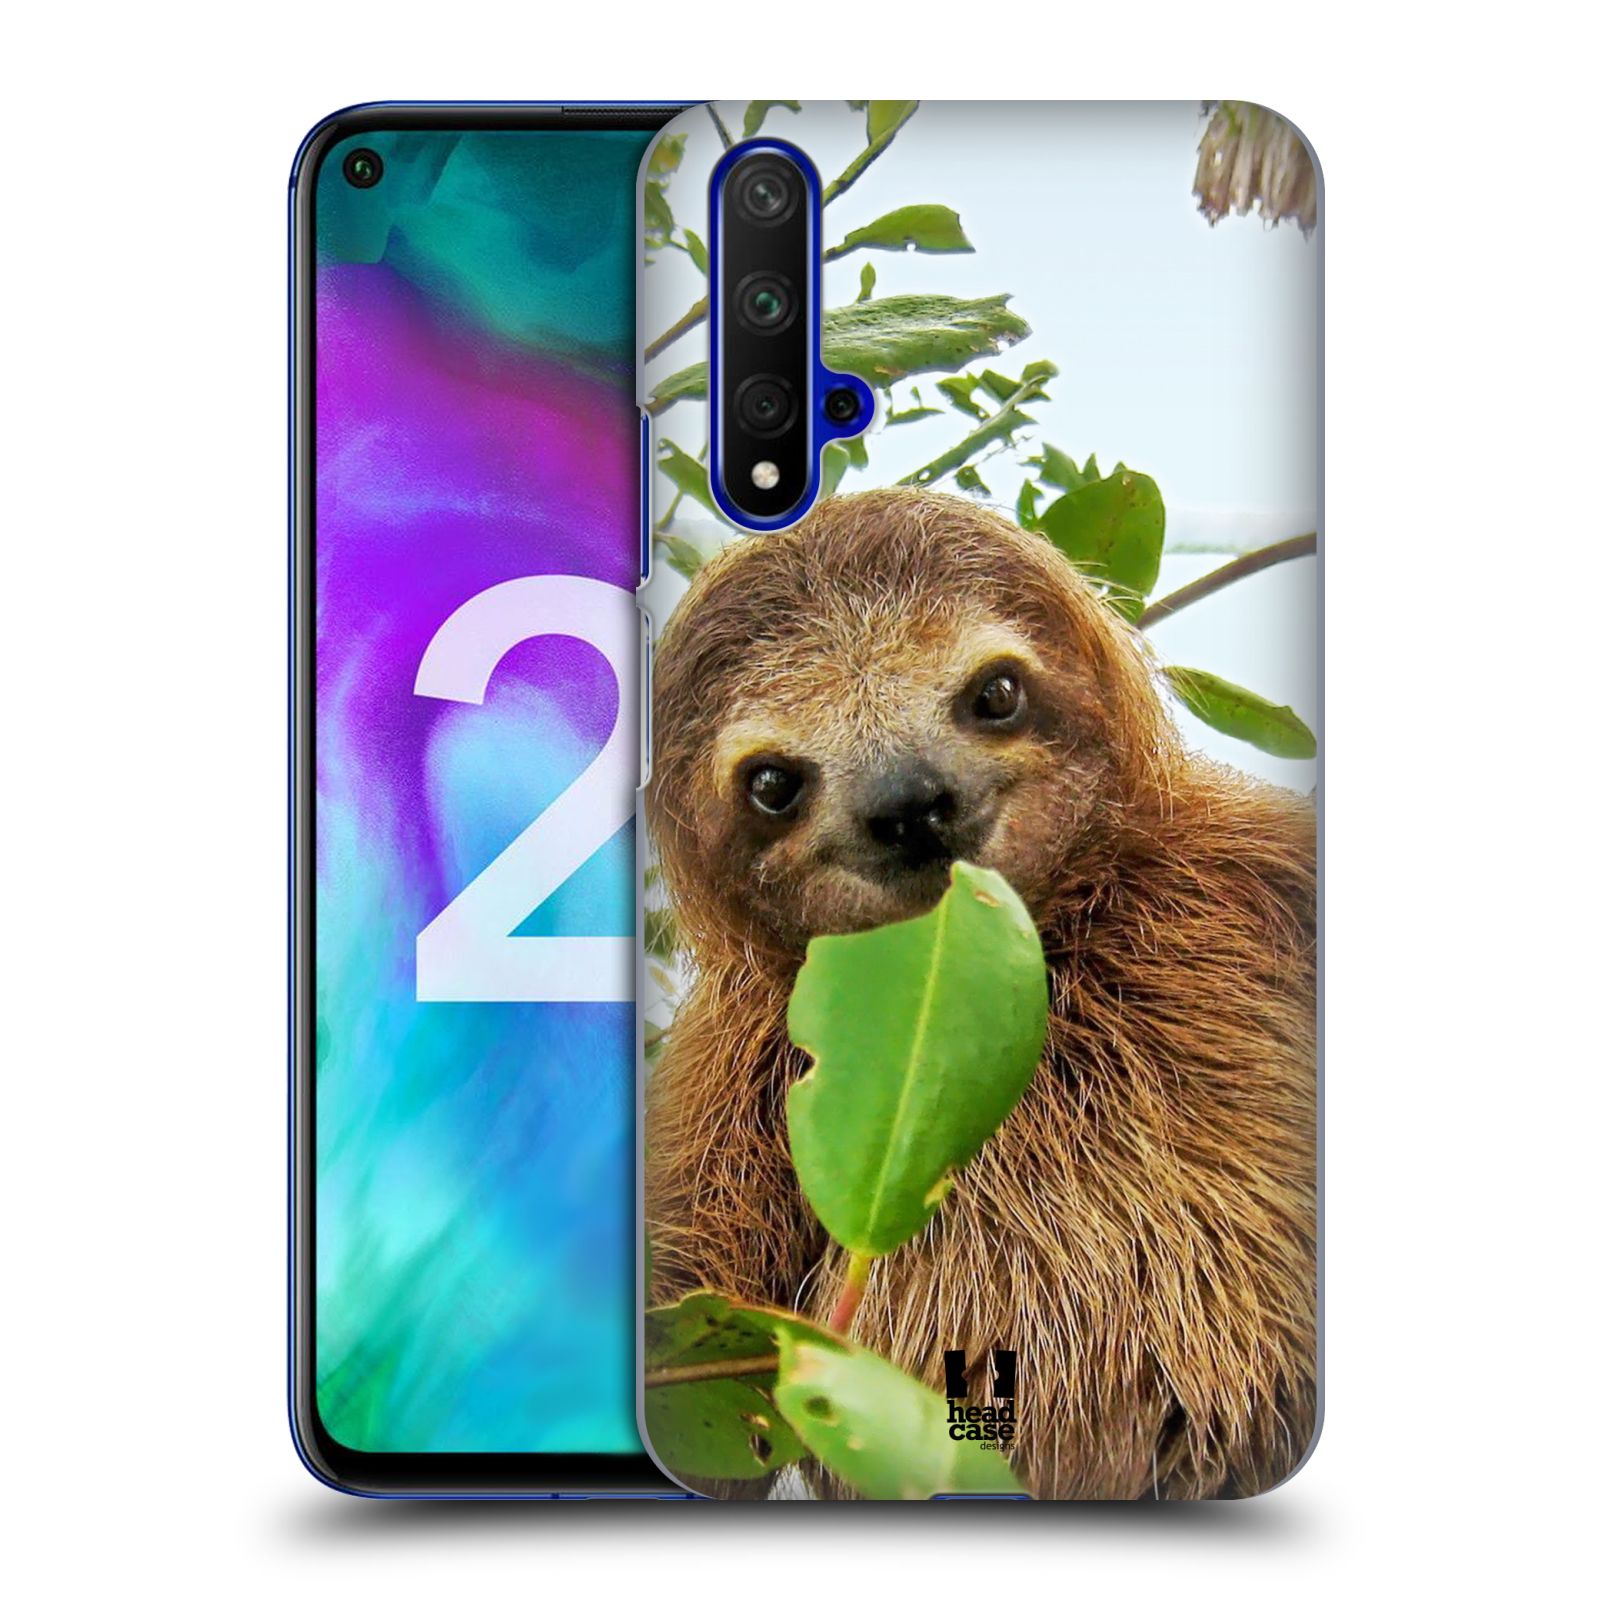 Pouzdro na mobil Honor 20 - HEAD CASE - vzor slavná zvířata foto lenochod